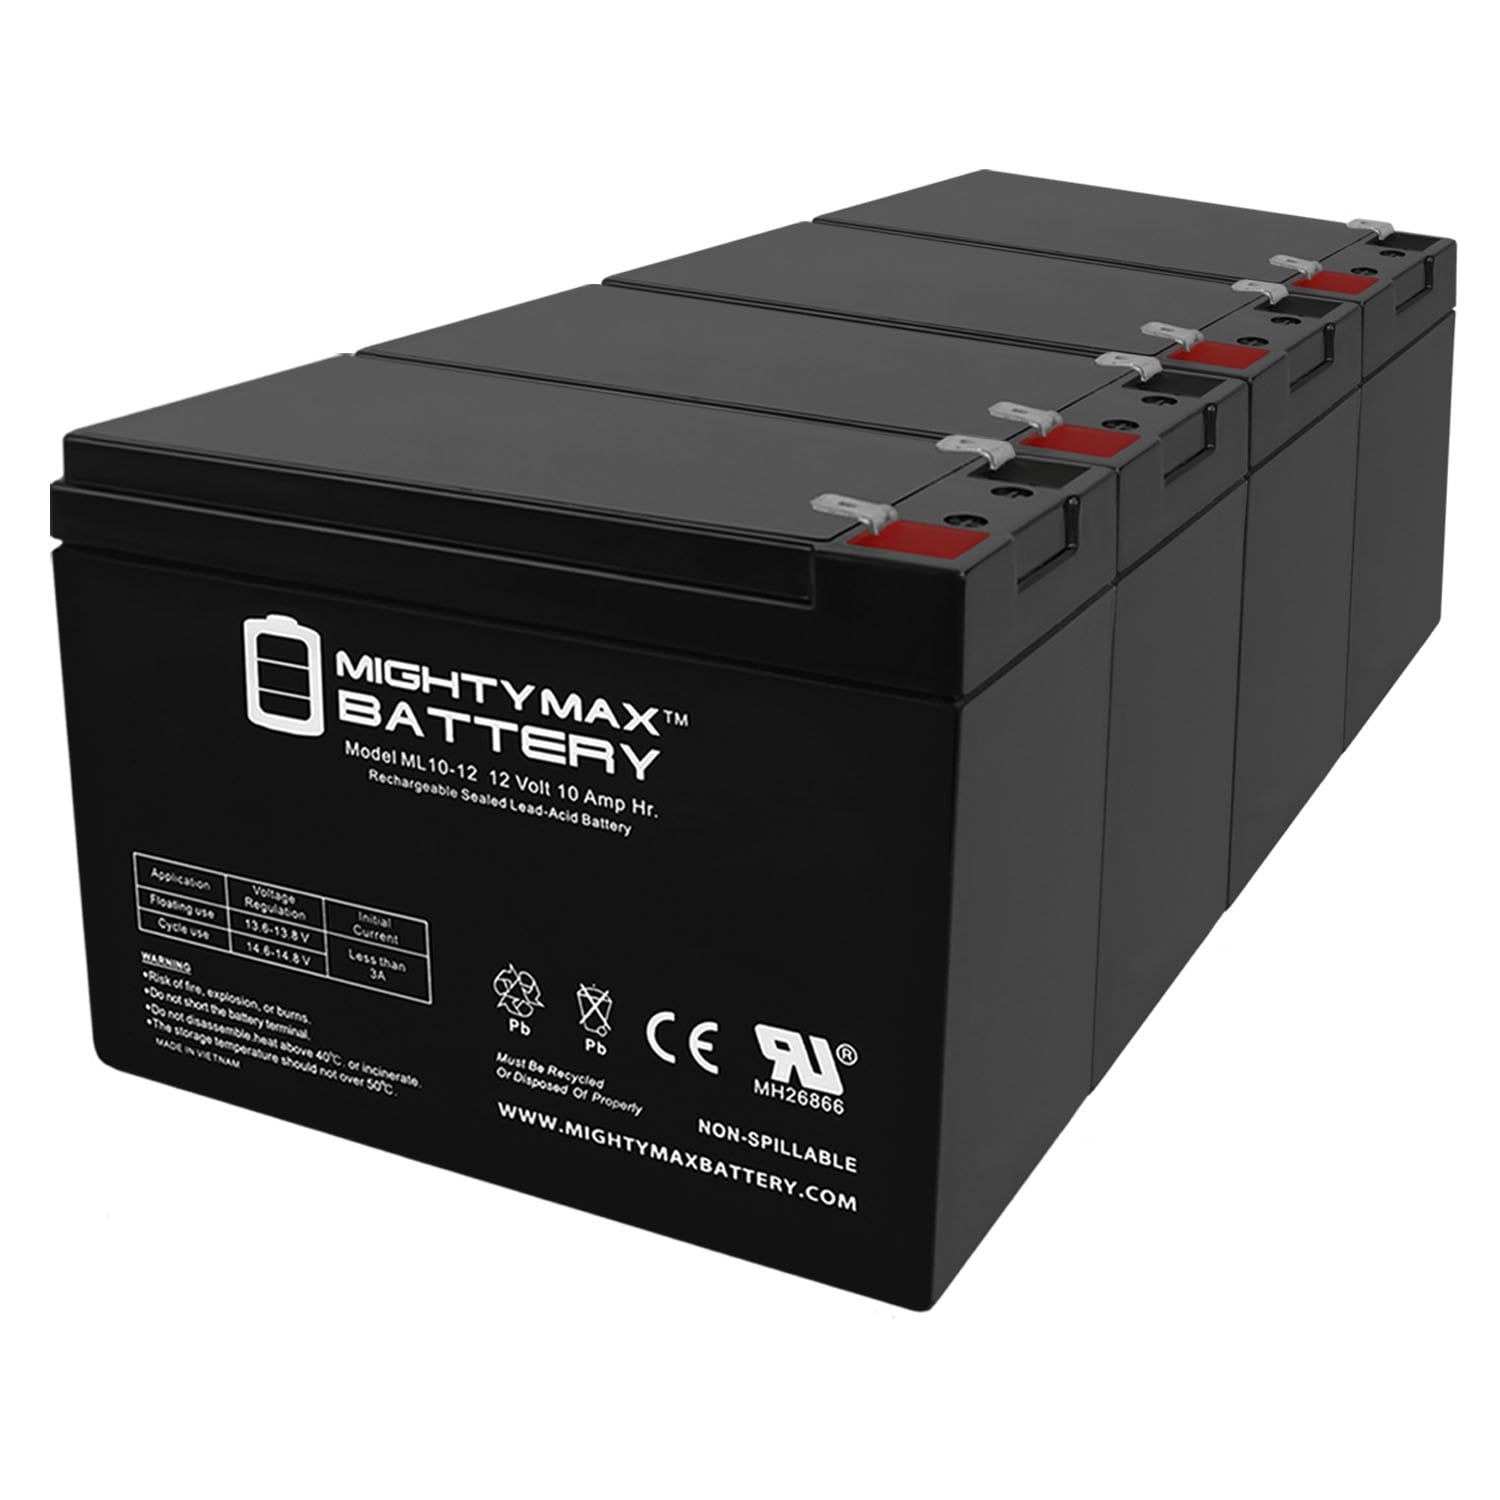 Batterie au plomb étanche RS PRO 12V 60Ah cyclique Code